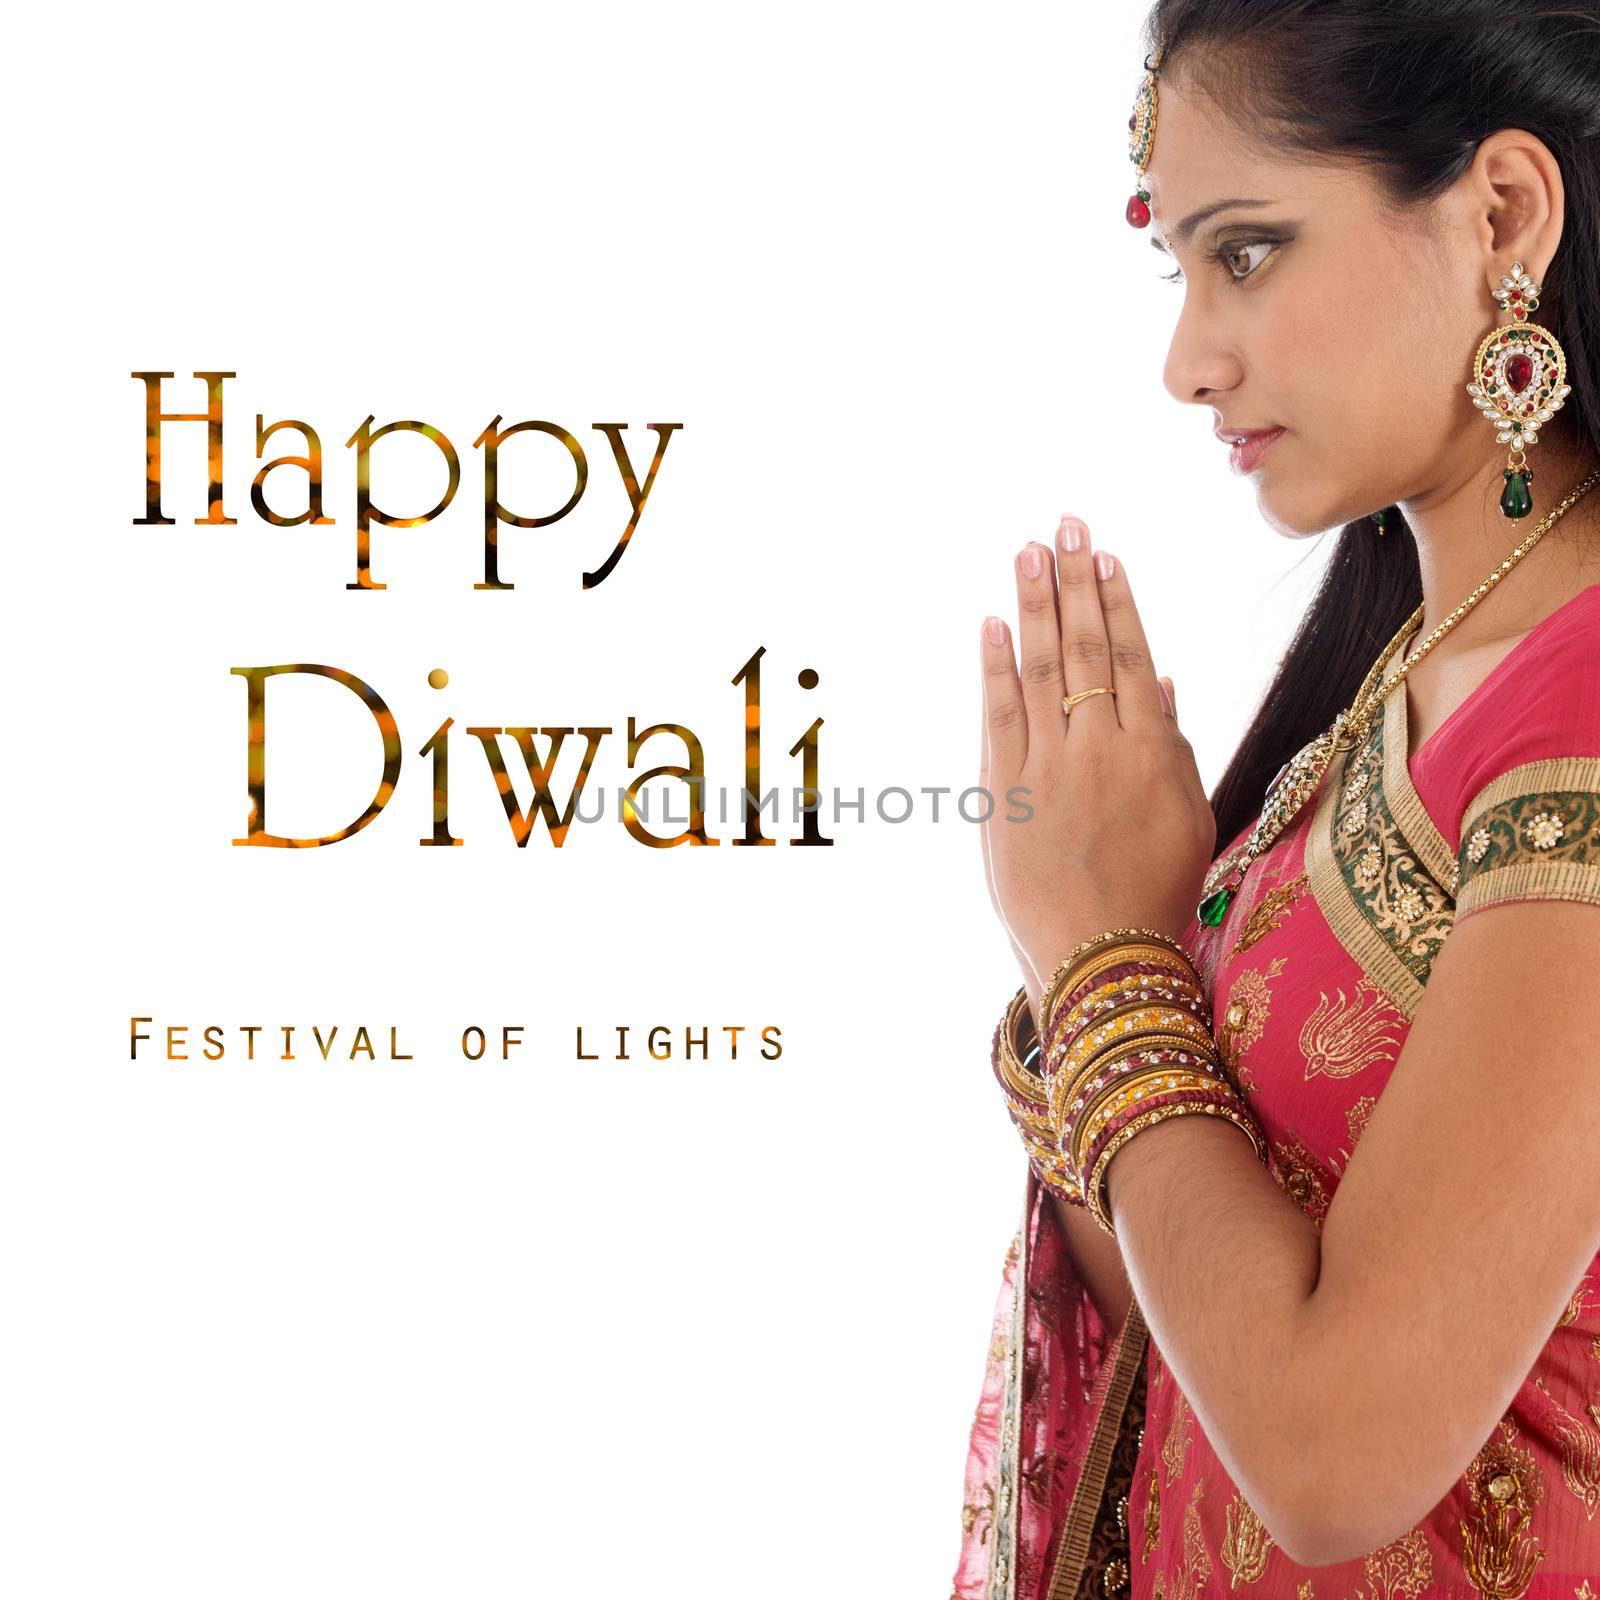 Celebrating Diwali festival by szefei